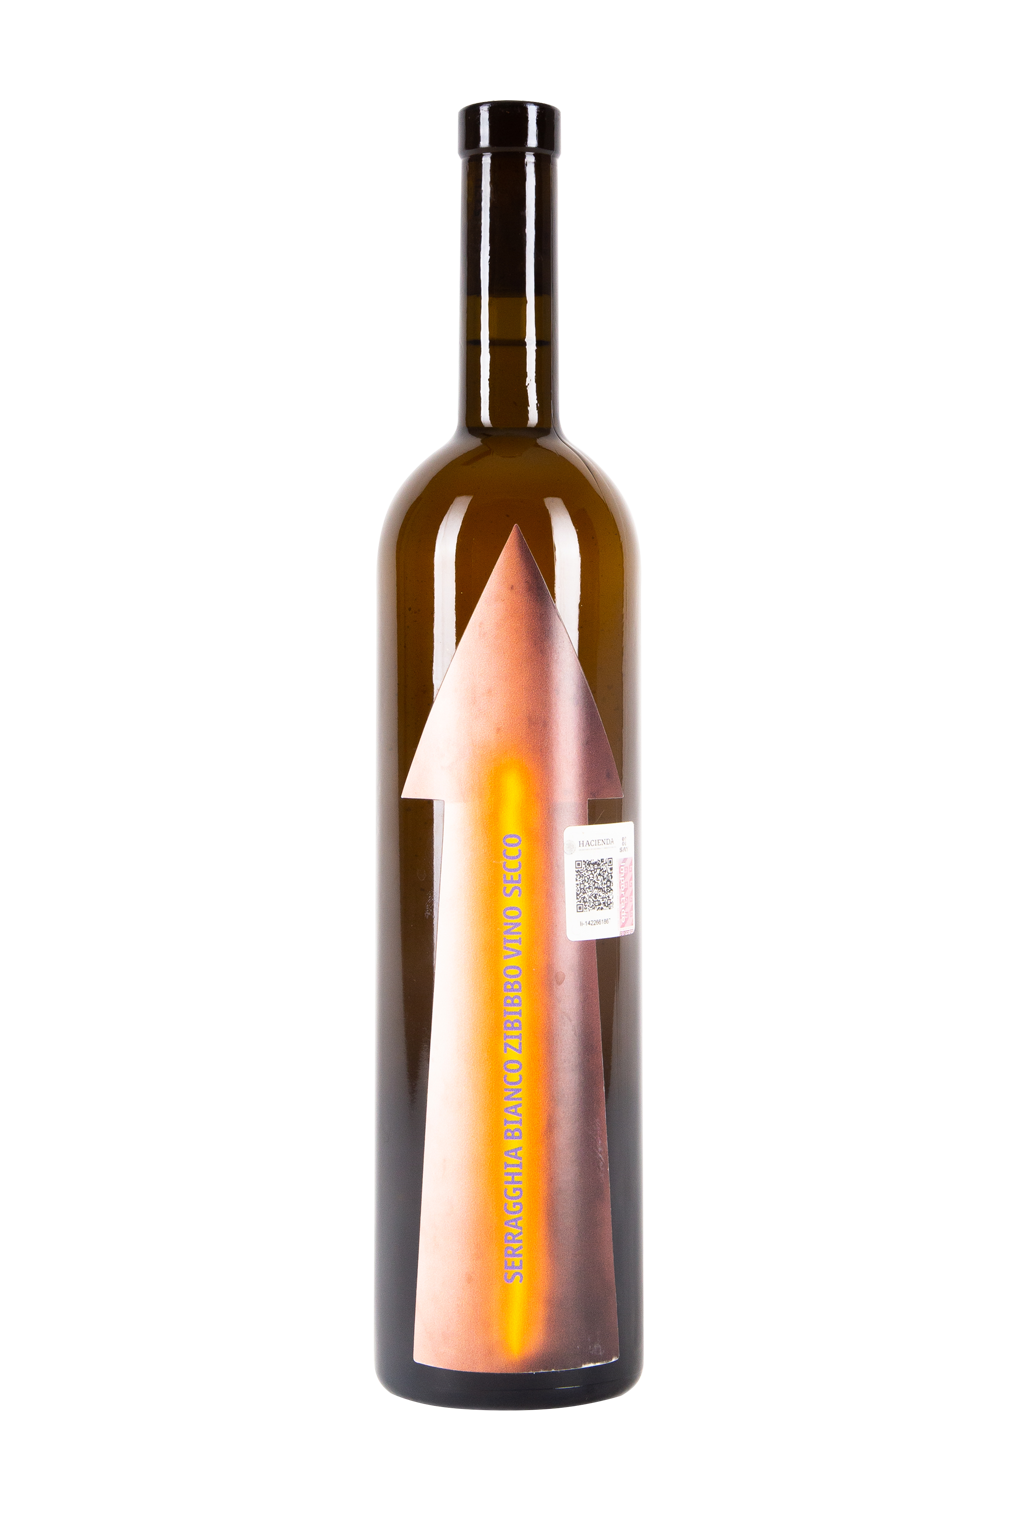 Serragghia- Bianco Zibibbo- Vino Seco- Vino de Pantelería- Vino Italiano- Gabrio Vini- Vino Naranja- Orange Wine- Natty Wine- Salvaje Vinos